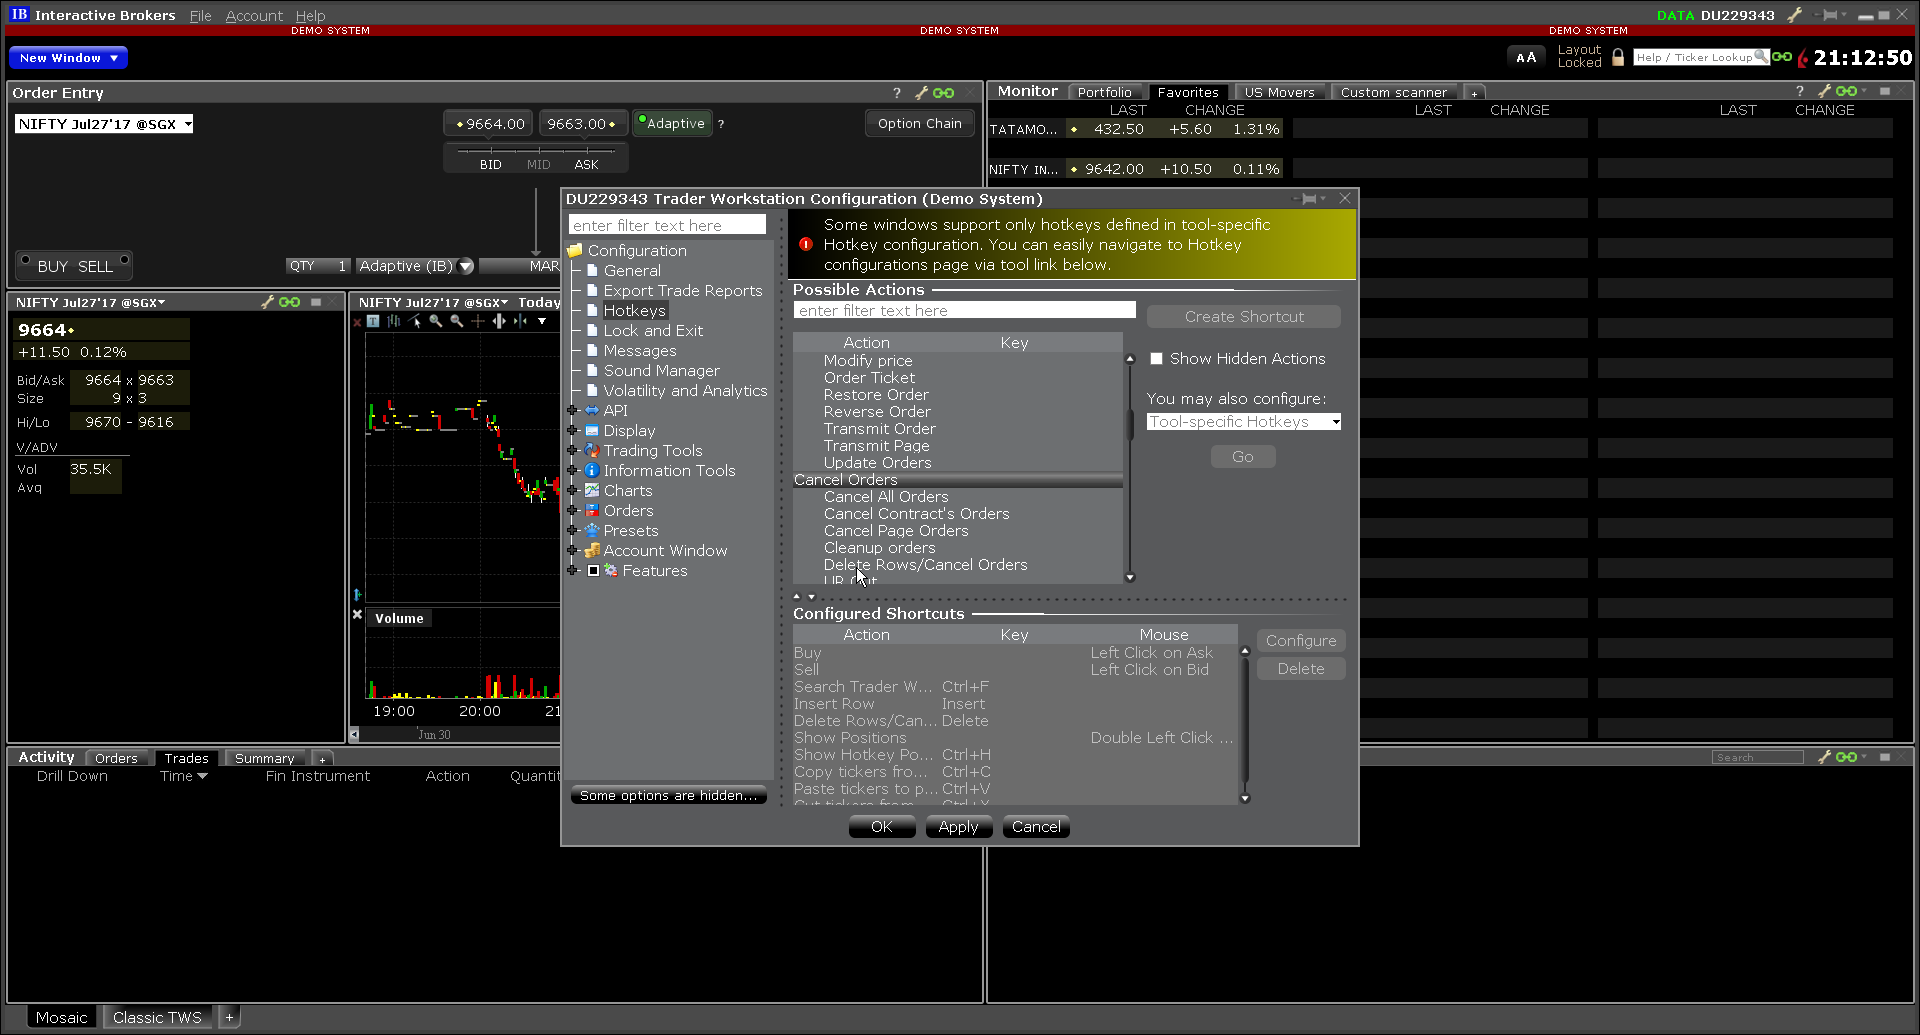 IB Trader Workstation Trading Terminal Screenshots